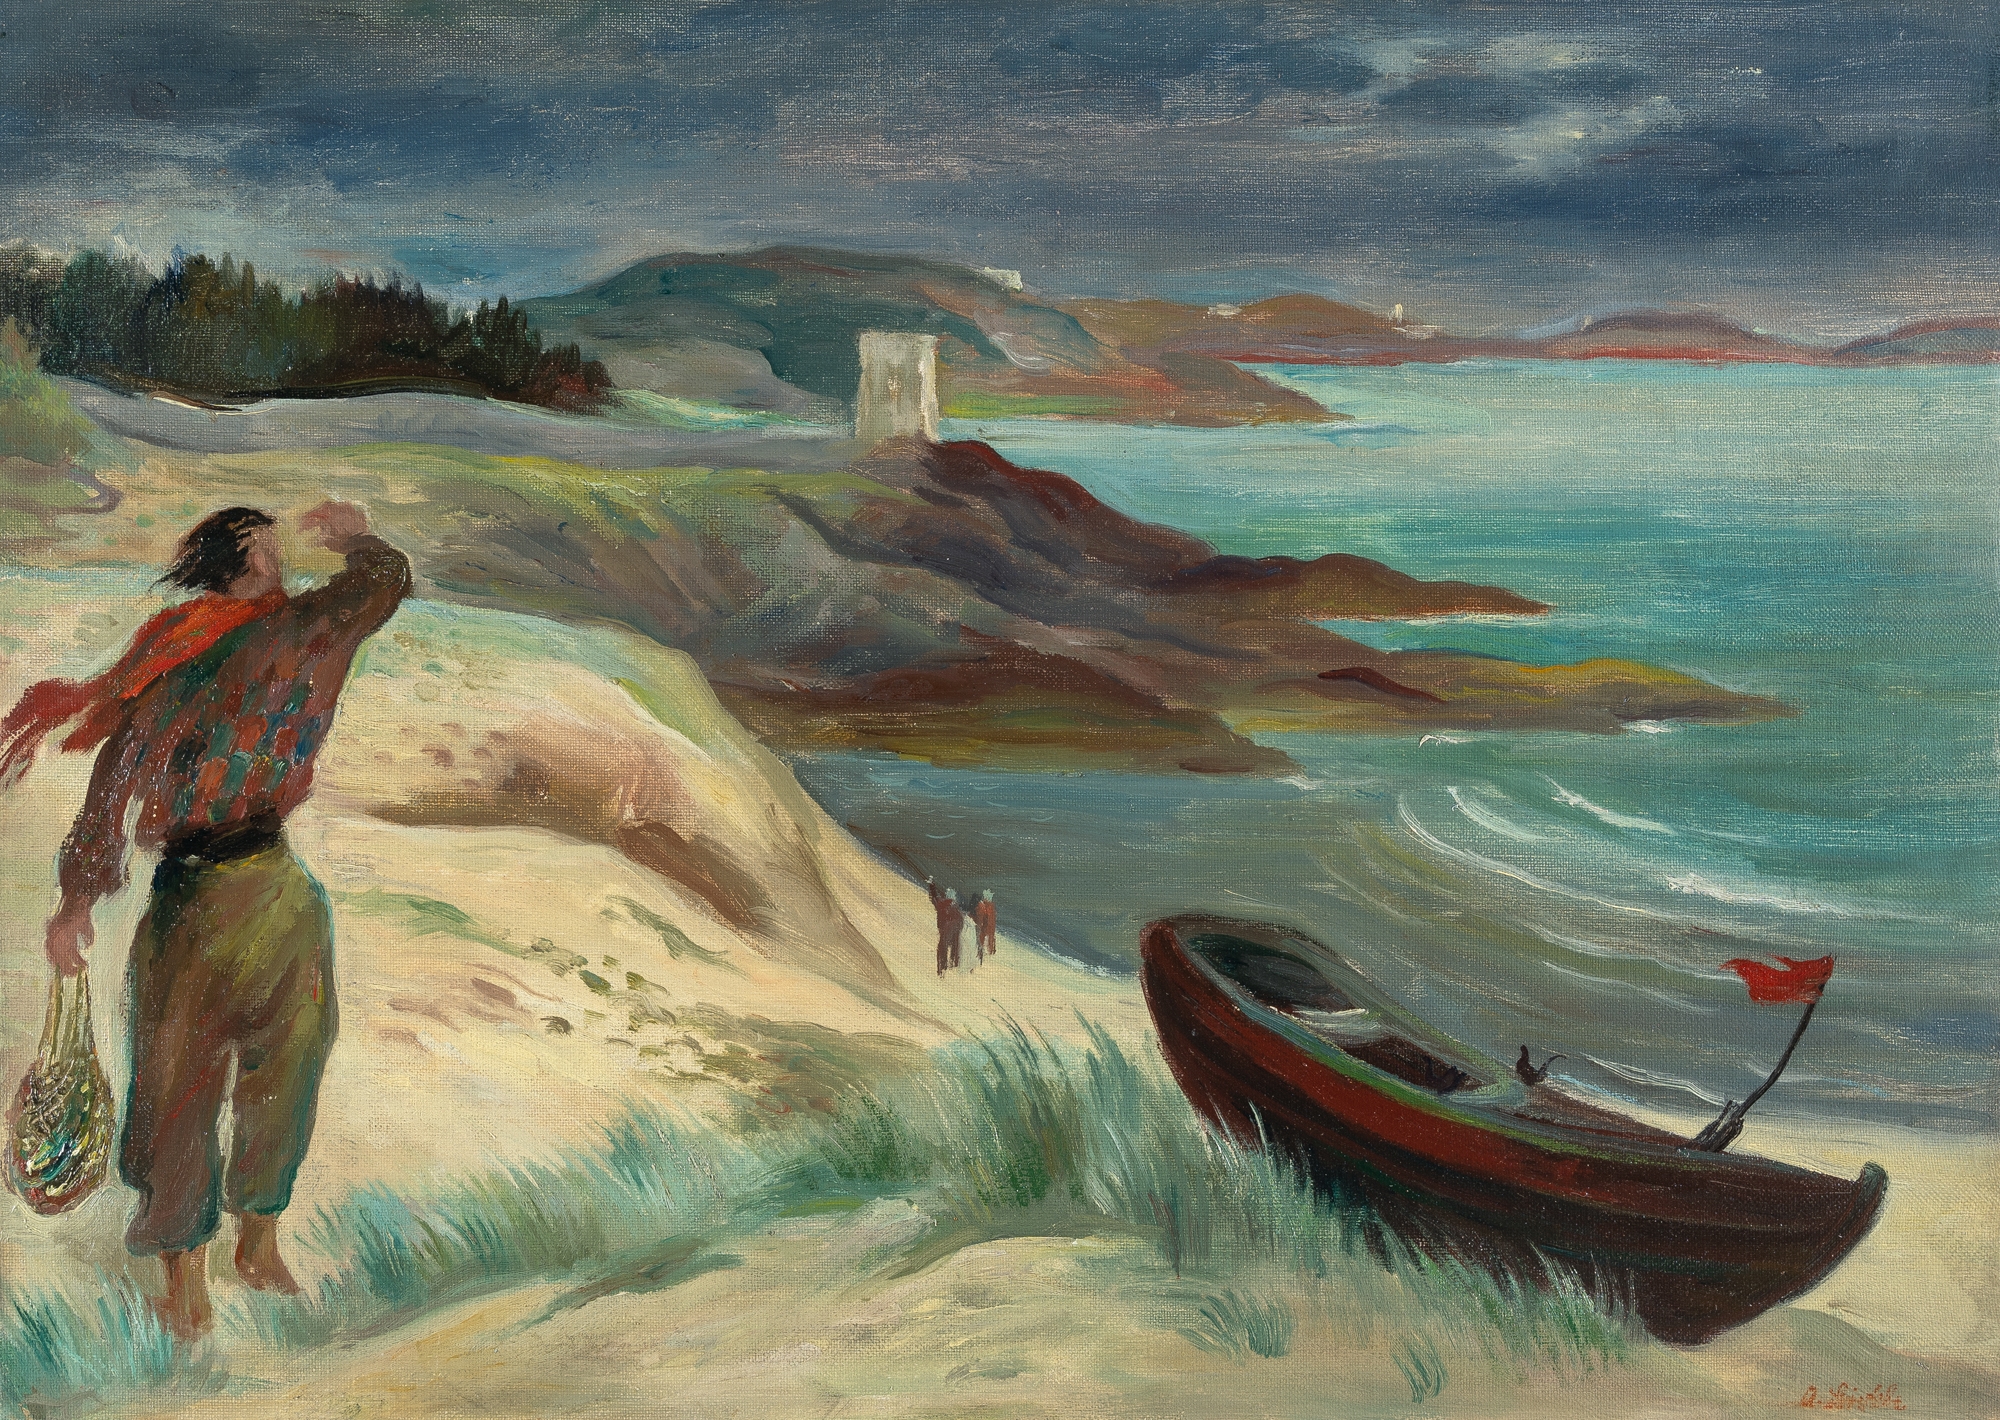 Breton coast by Albert Birkle, 1947